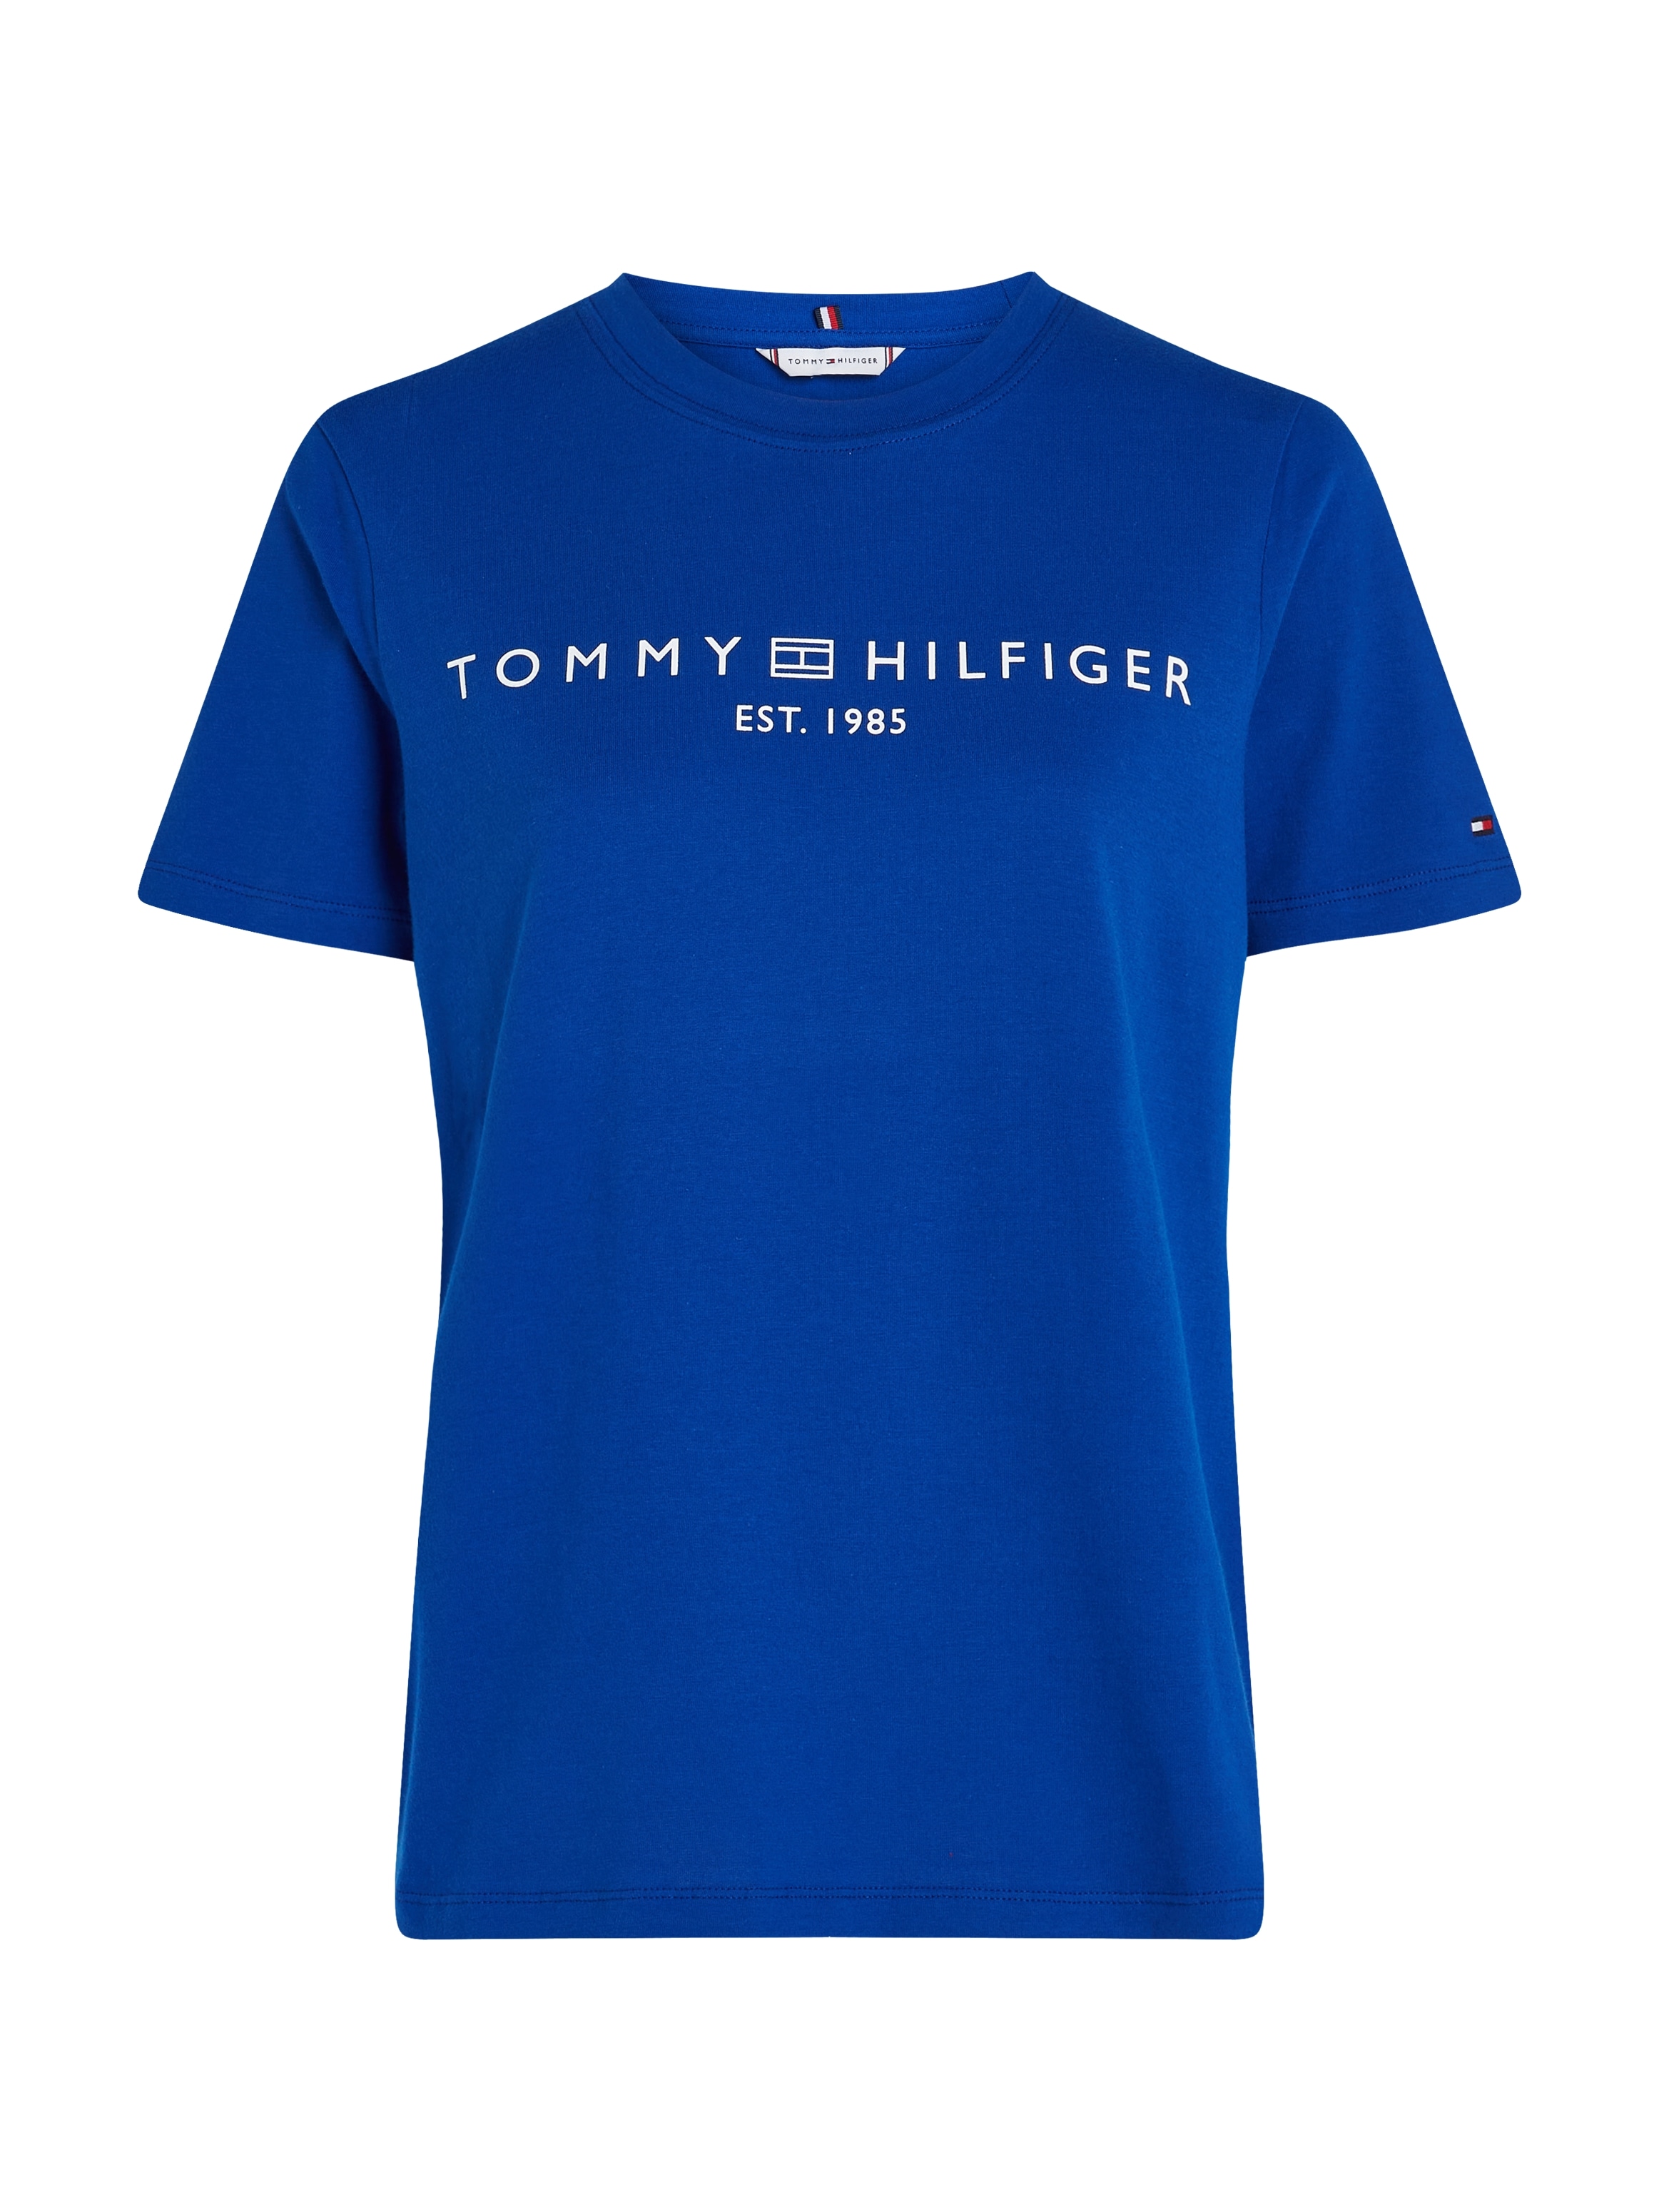 Tommy Hilfiger kaufen auf online der Markenlabel | Brust BAUR mit T-Shirt